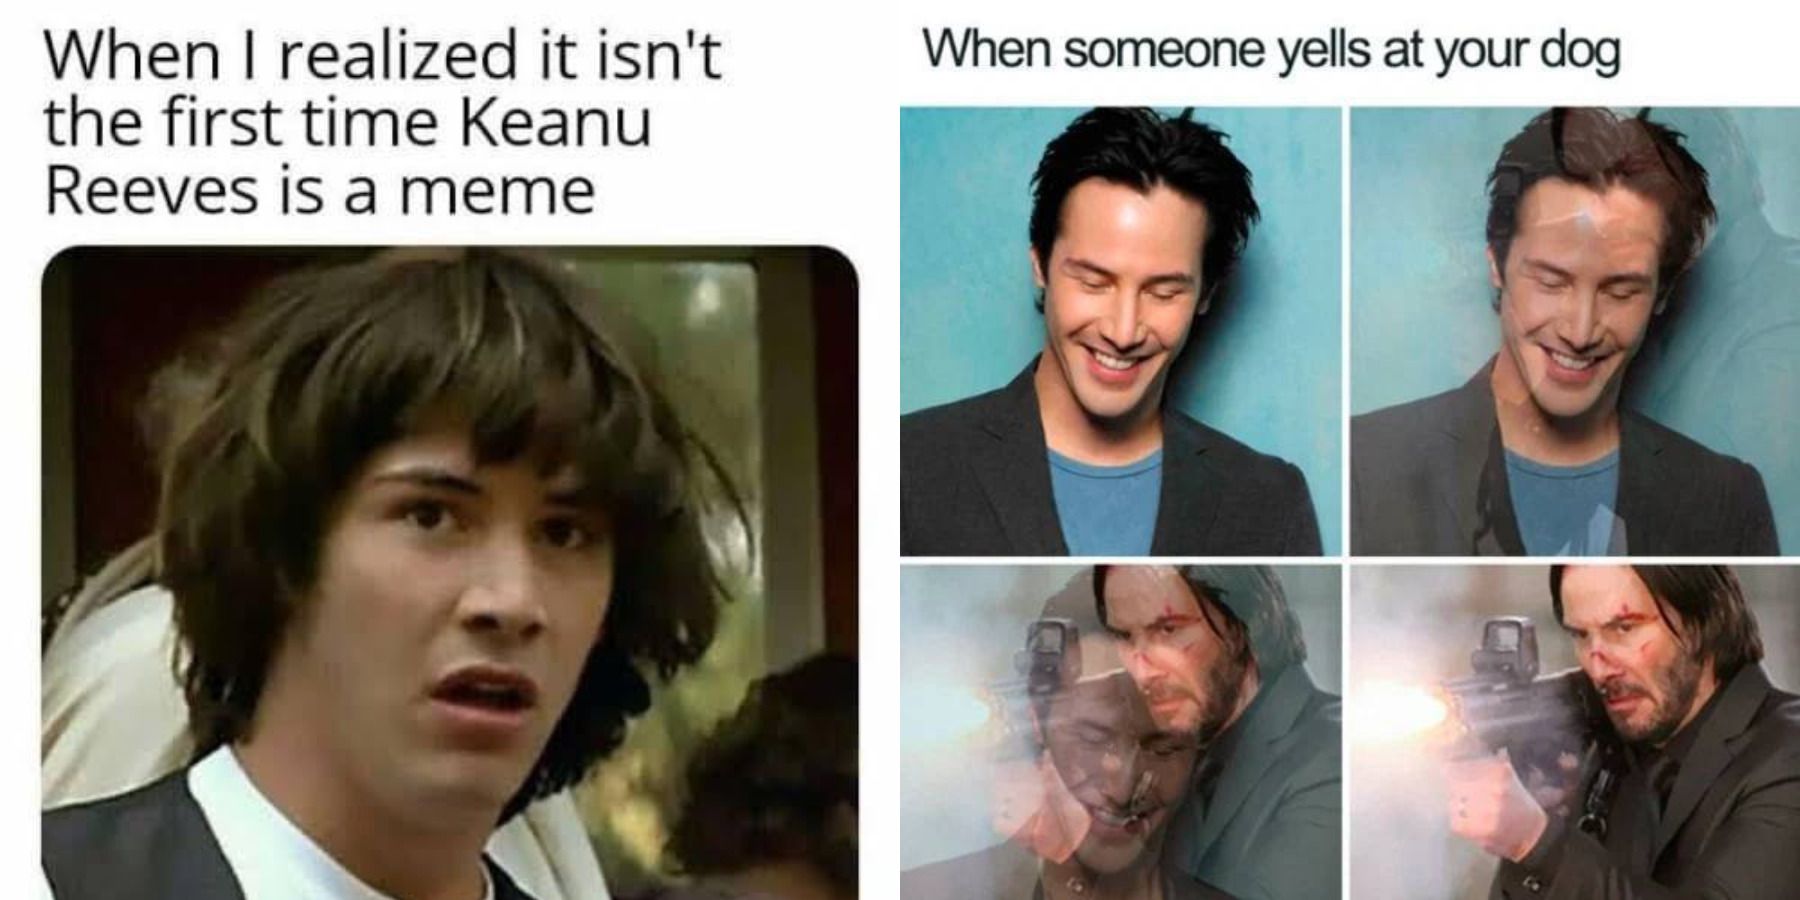 Keanu Reeves memes feature